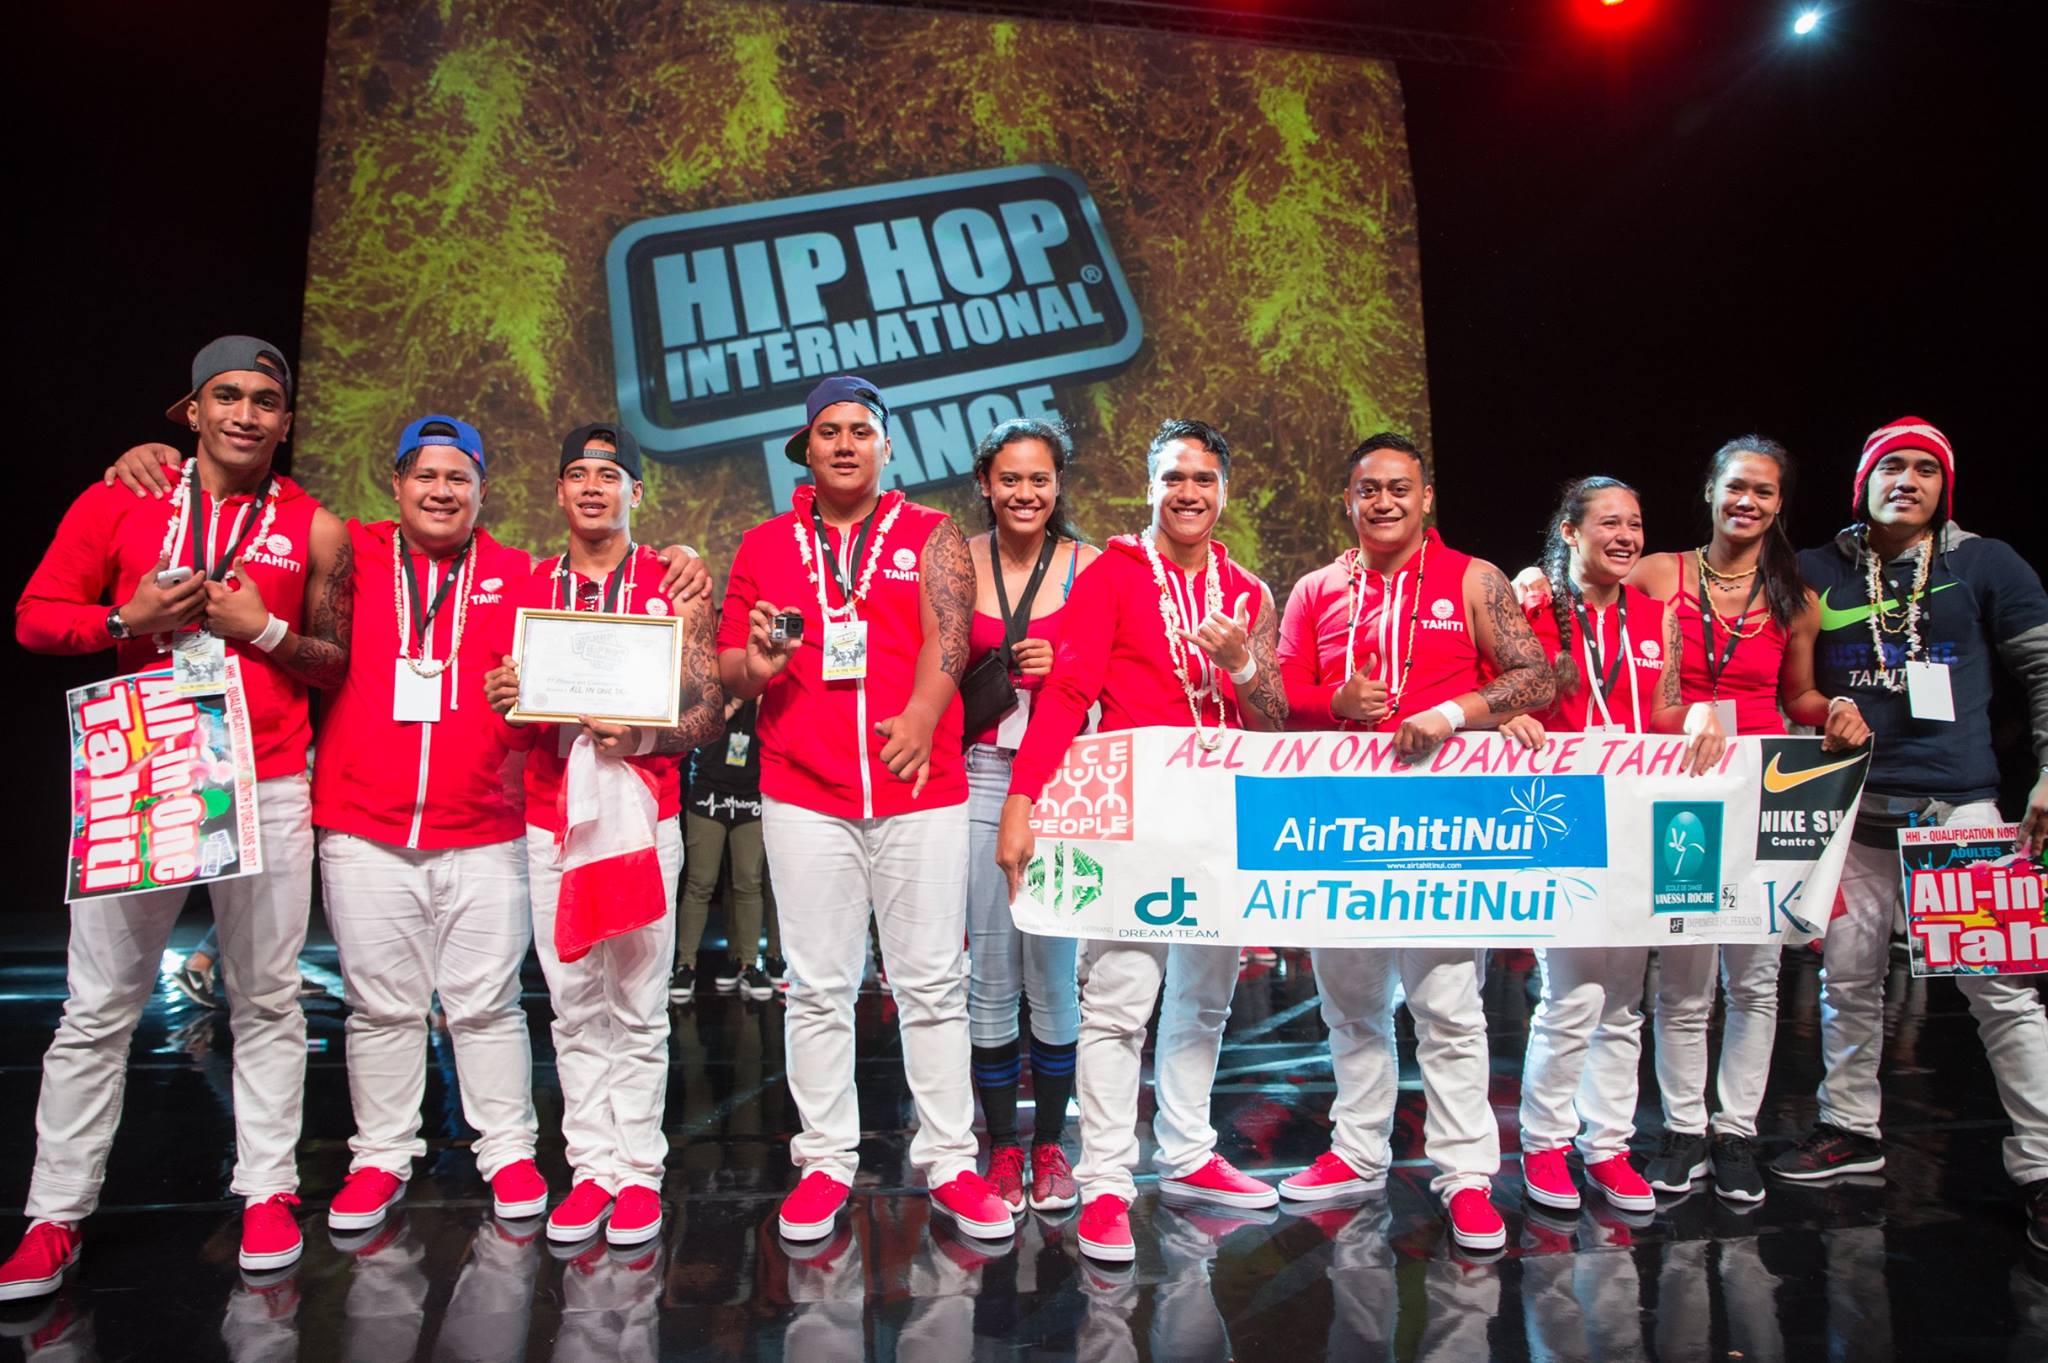 All in One pourrait représenter la France aux championnats du monde de Hip hop